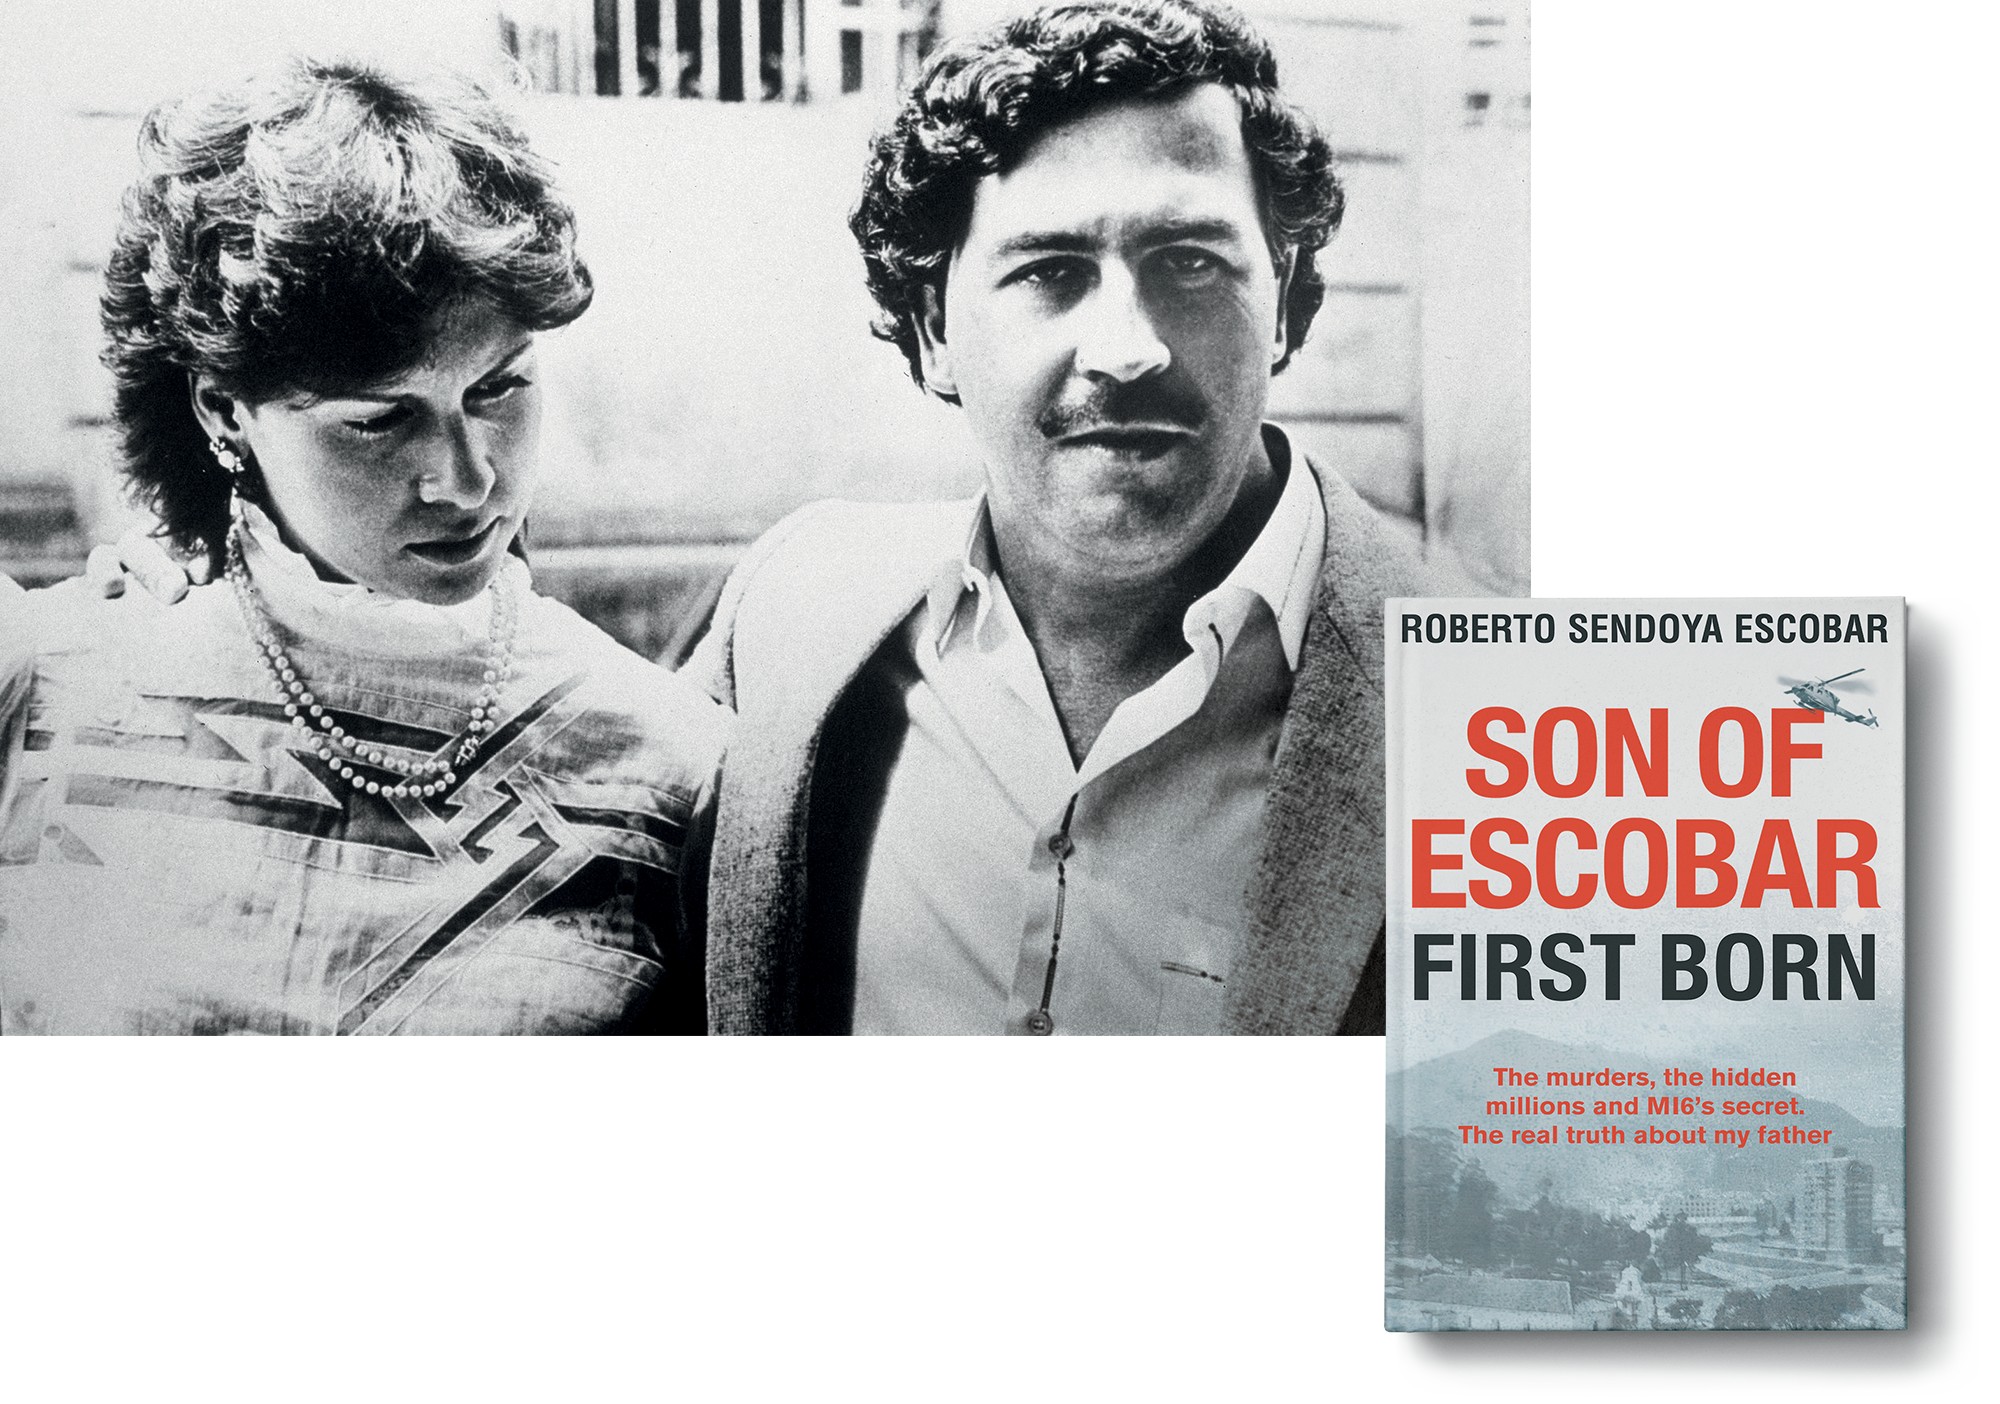 Pablo Escobar, que foi o mais notório traficante de drogas e narcoterrorista do mundo, e – supostamente – pai biológico de Roberto Sendoya Escobar (Foto: divulgação)